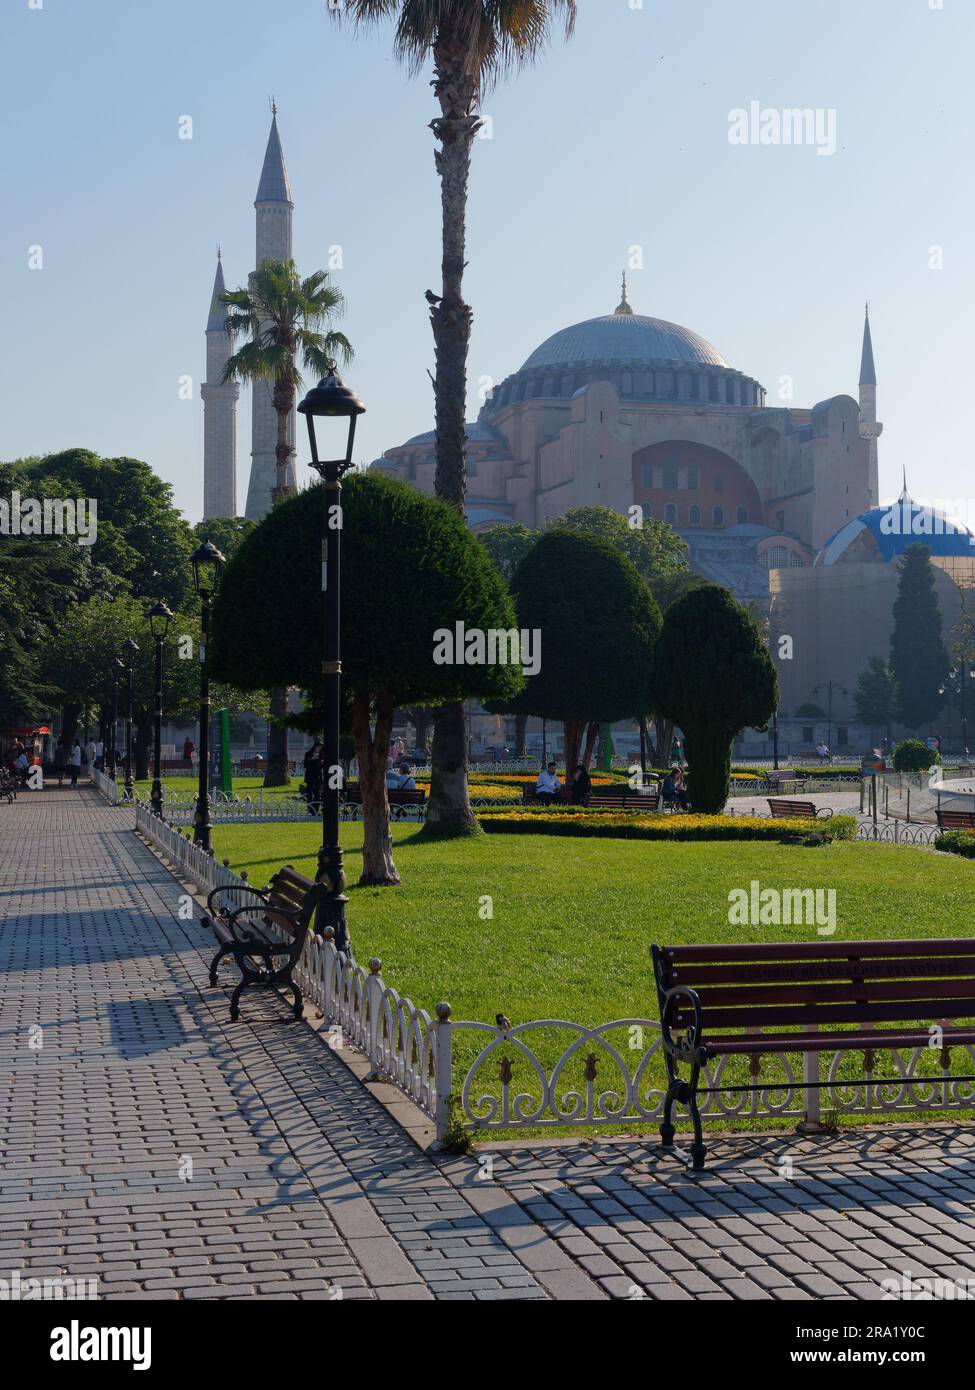 Hagia Sophia Moschee und Gärten an einem Sommermorgen im Stadtteil Sultanahmet in Istanbul, Türkei. Stockfoto